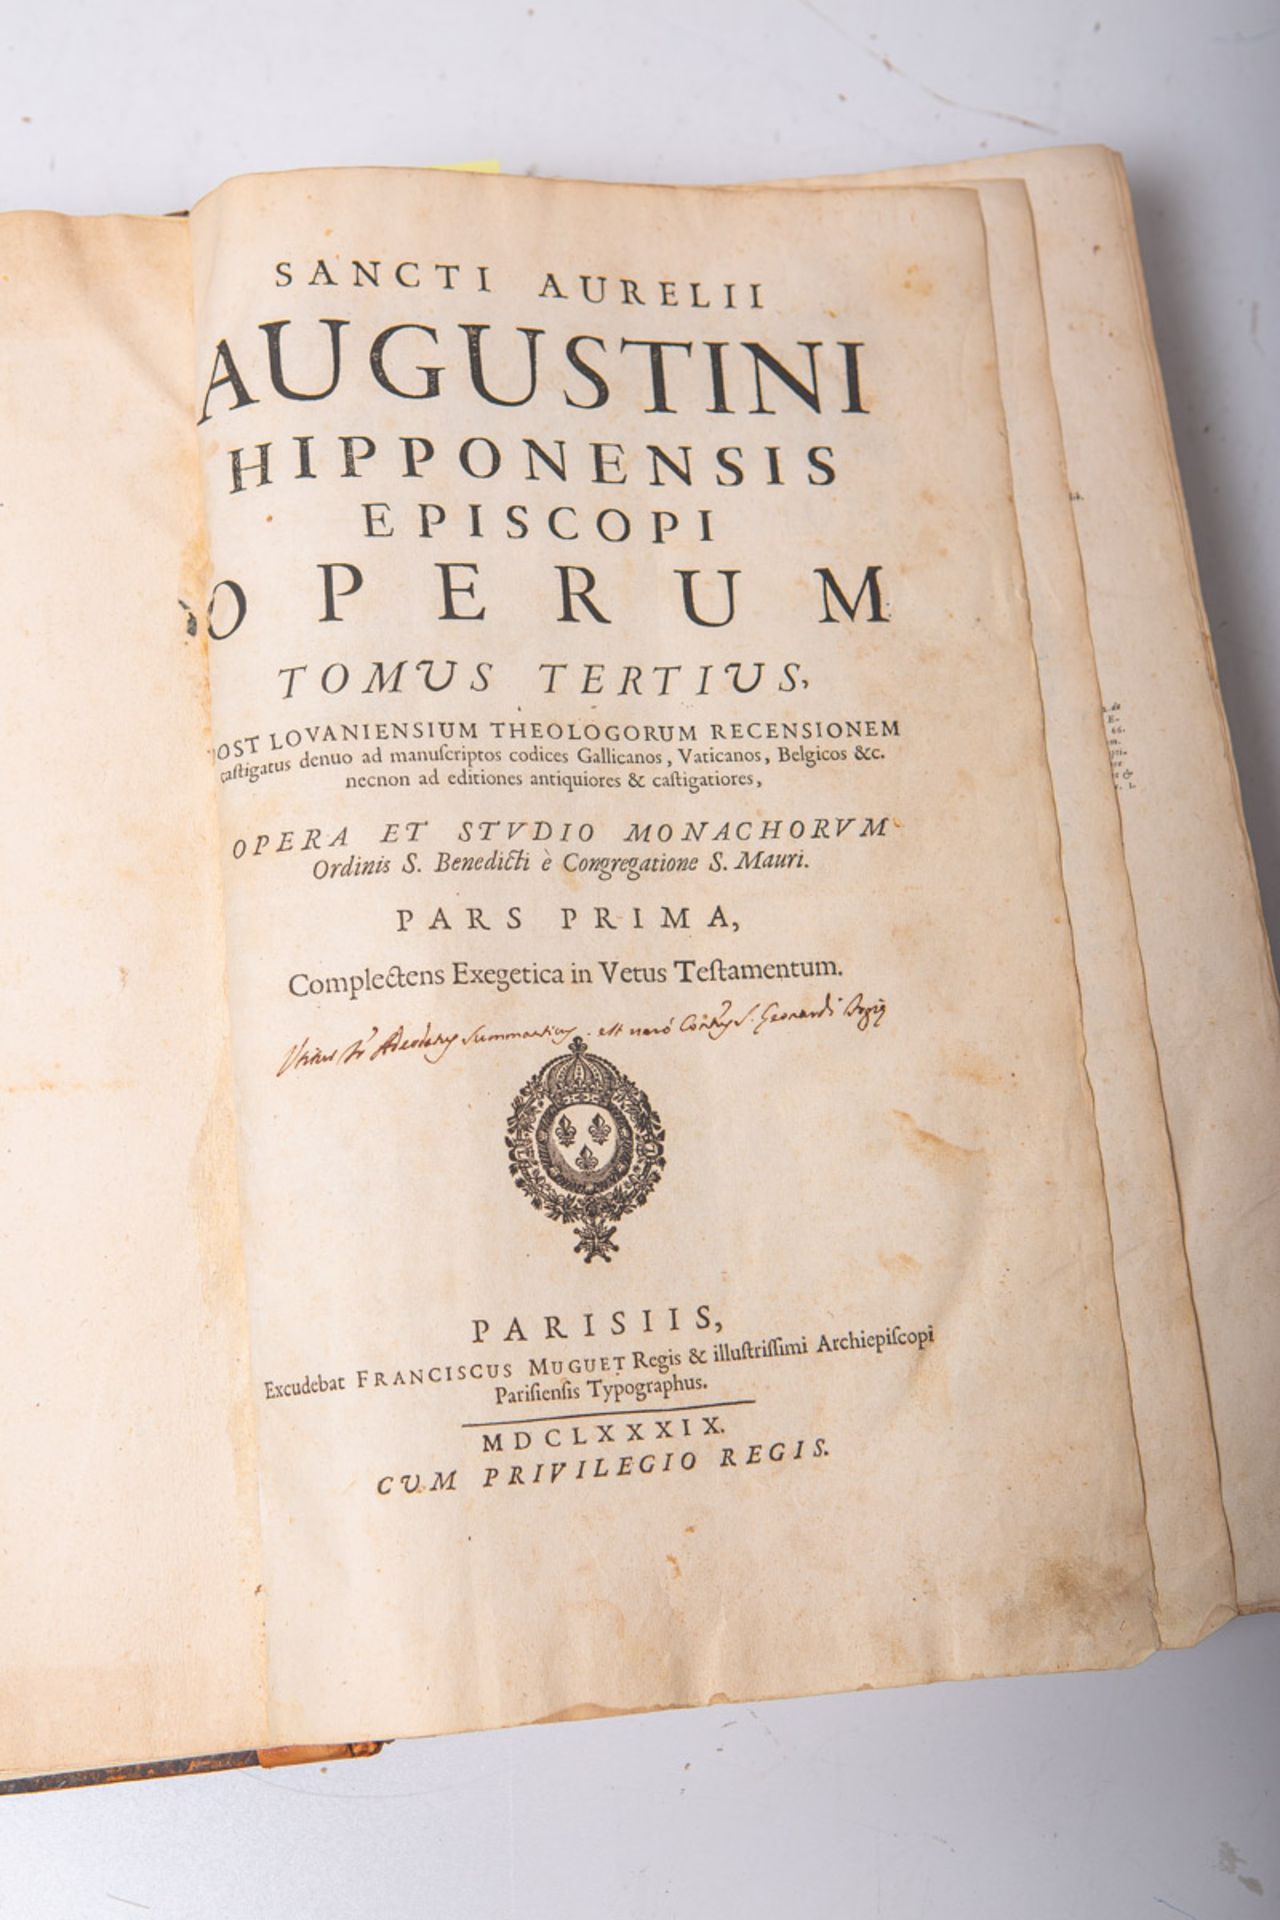 Tomus Tertius, "Sancti Aurelli, Augustini Hipponensis Episcopi, Operum"